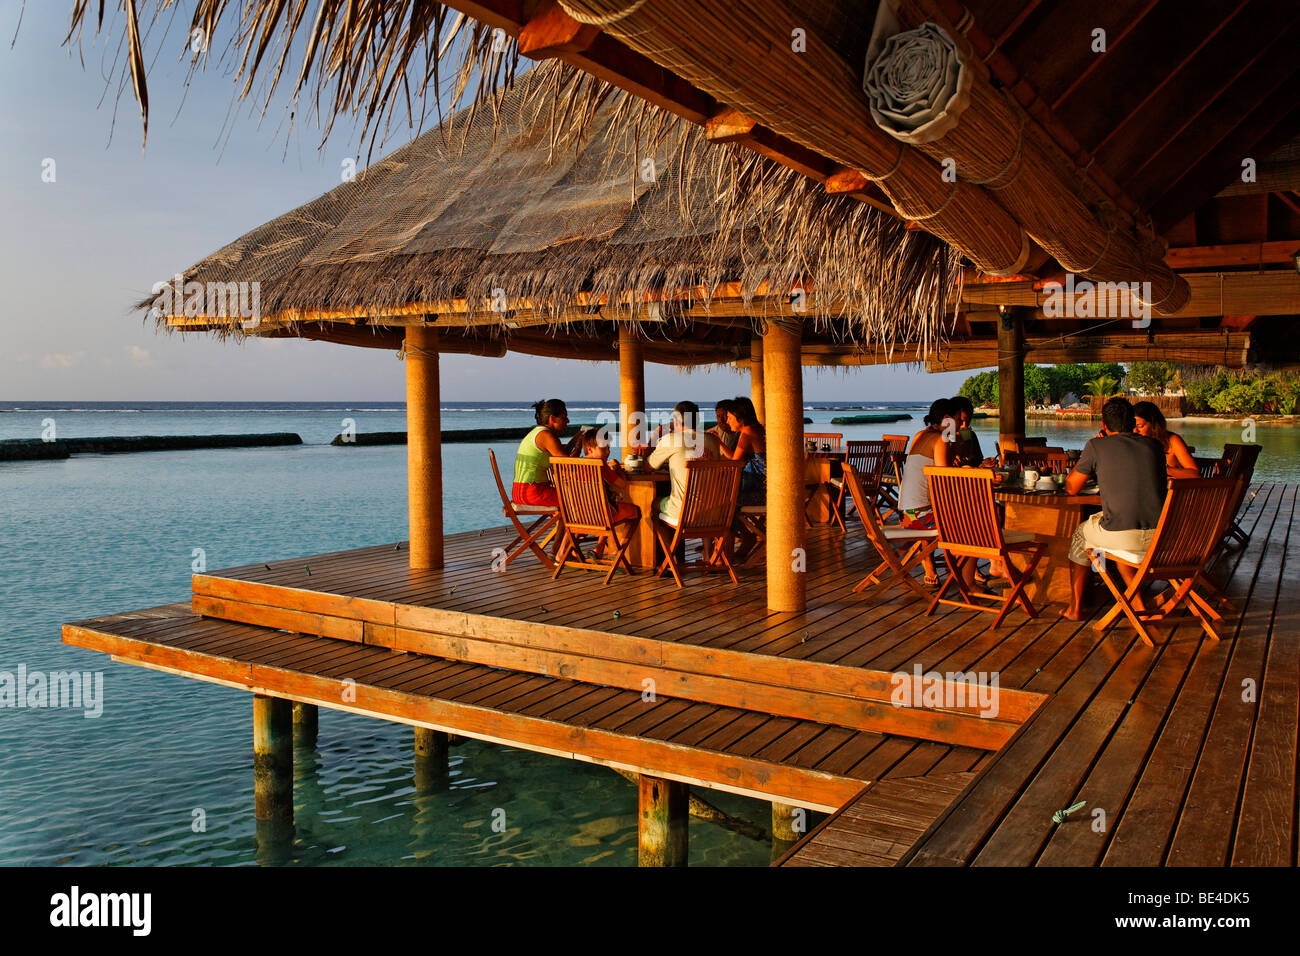 Menschen beim Frühstück im offenen Restaurant, Dach mit Palmwedeln, Restaurant, Lagune, Meer, Malediven Insel Rihiveli, Süd Male am Stockfoto